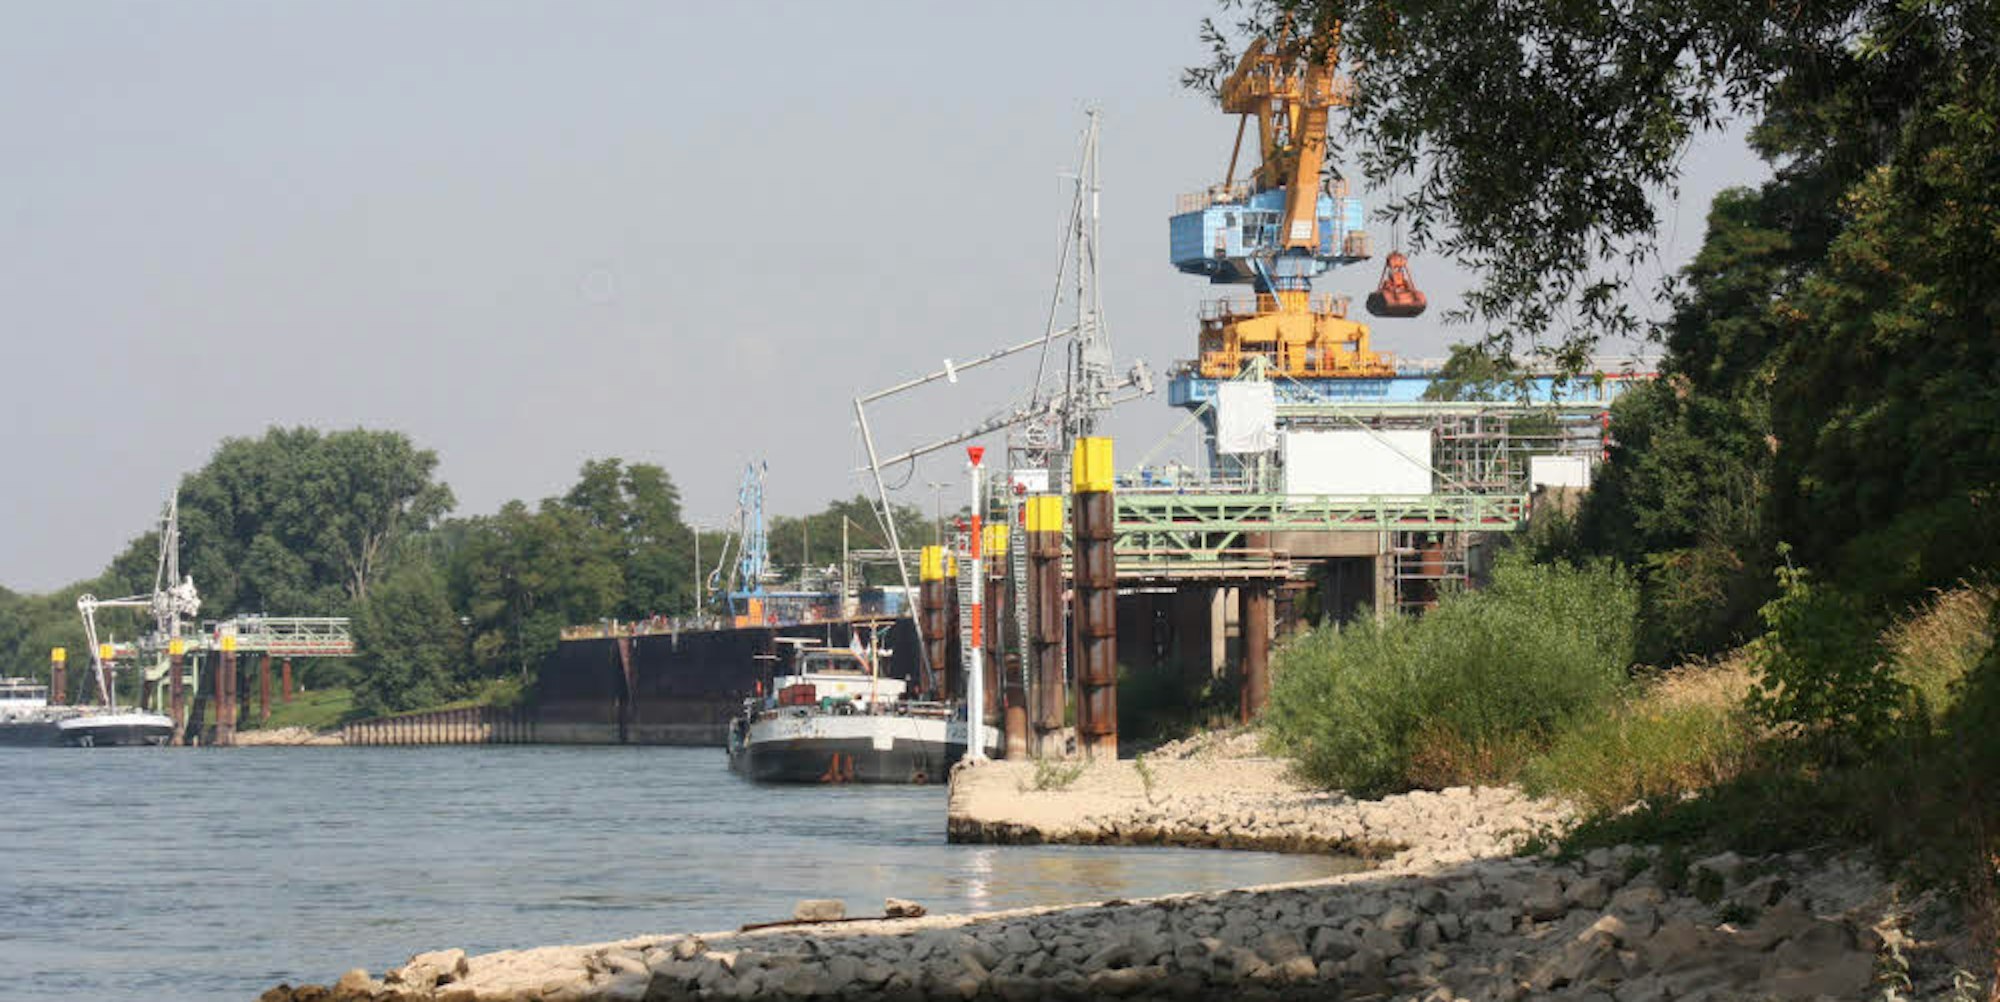 Die Tragkraft der alten Kaimauer des Lülsdorfer Hafens reicht nicht aus, um die Lasten des geplanten neuen Containerterminals zu tragen. Deshalb wird eine neue Hafenwand gebaut, die rund zwei Meter in den Fluss hinein ragt.